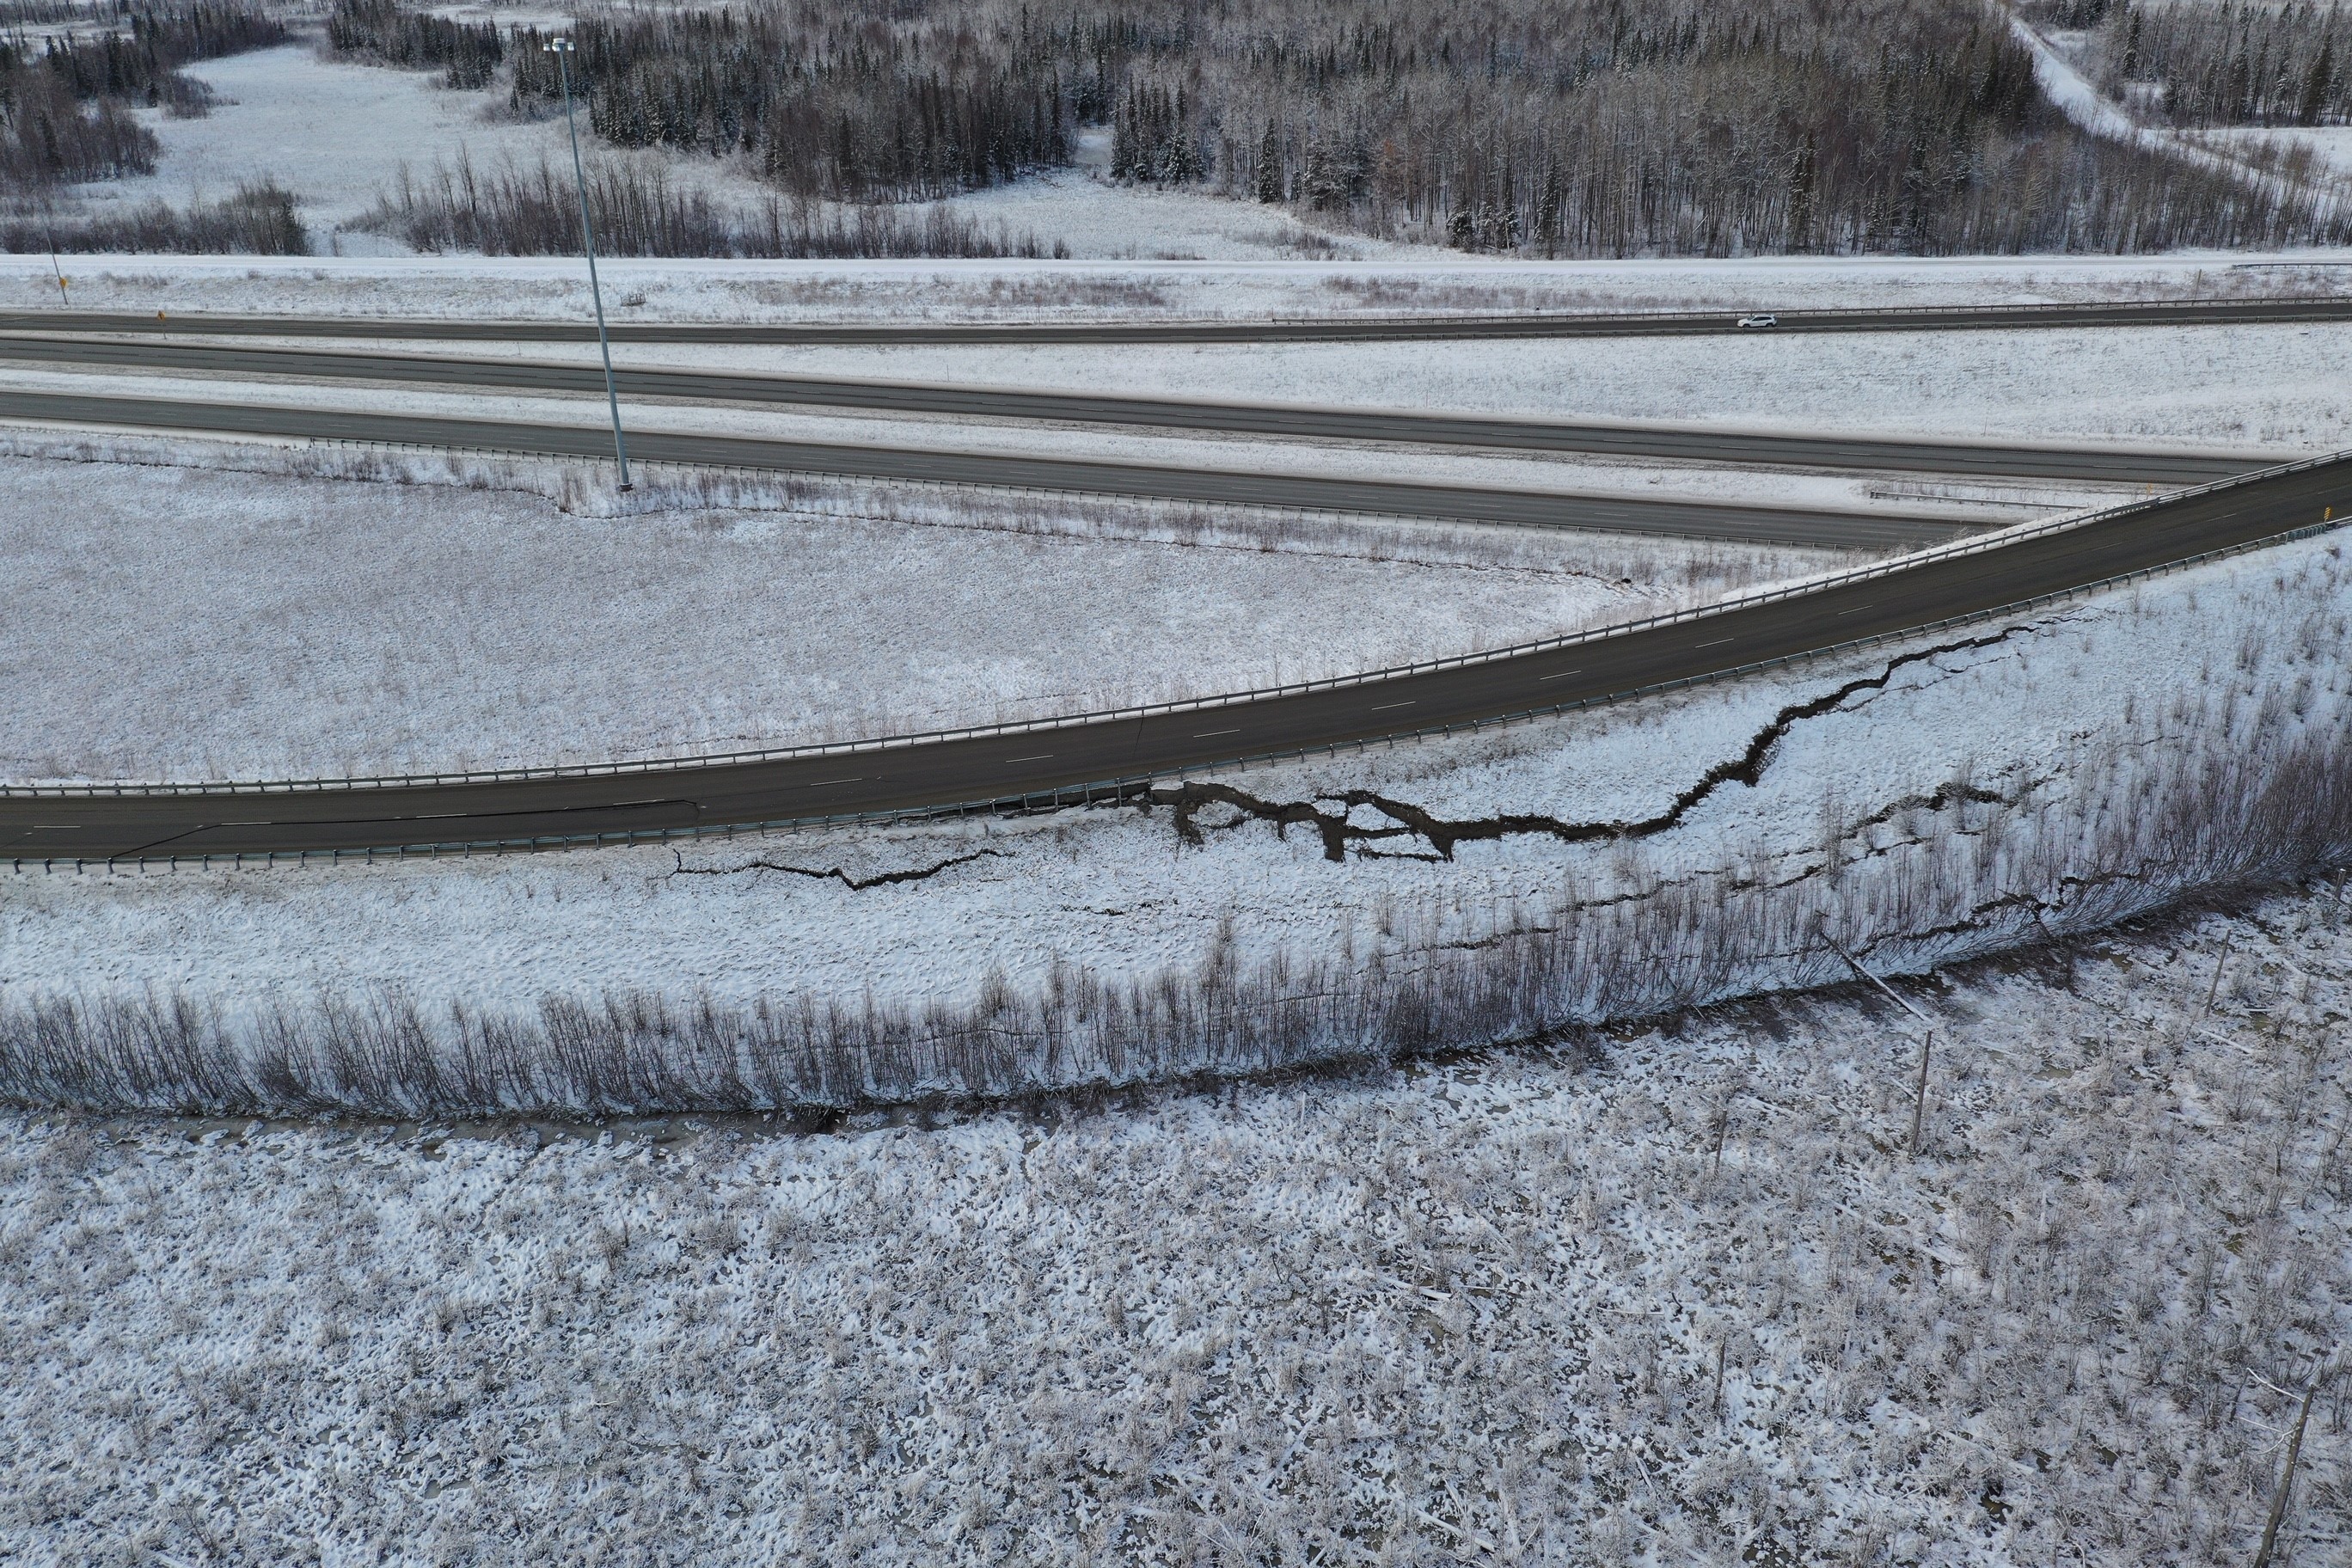 Финляндия землетрясения. Аляскинская железная дорога. Ледотрясение. Морозные земли - зарубки. Alaska earthquake.